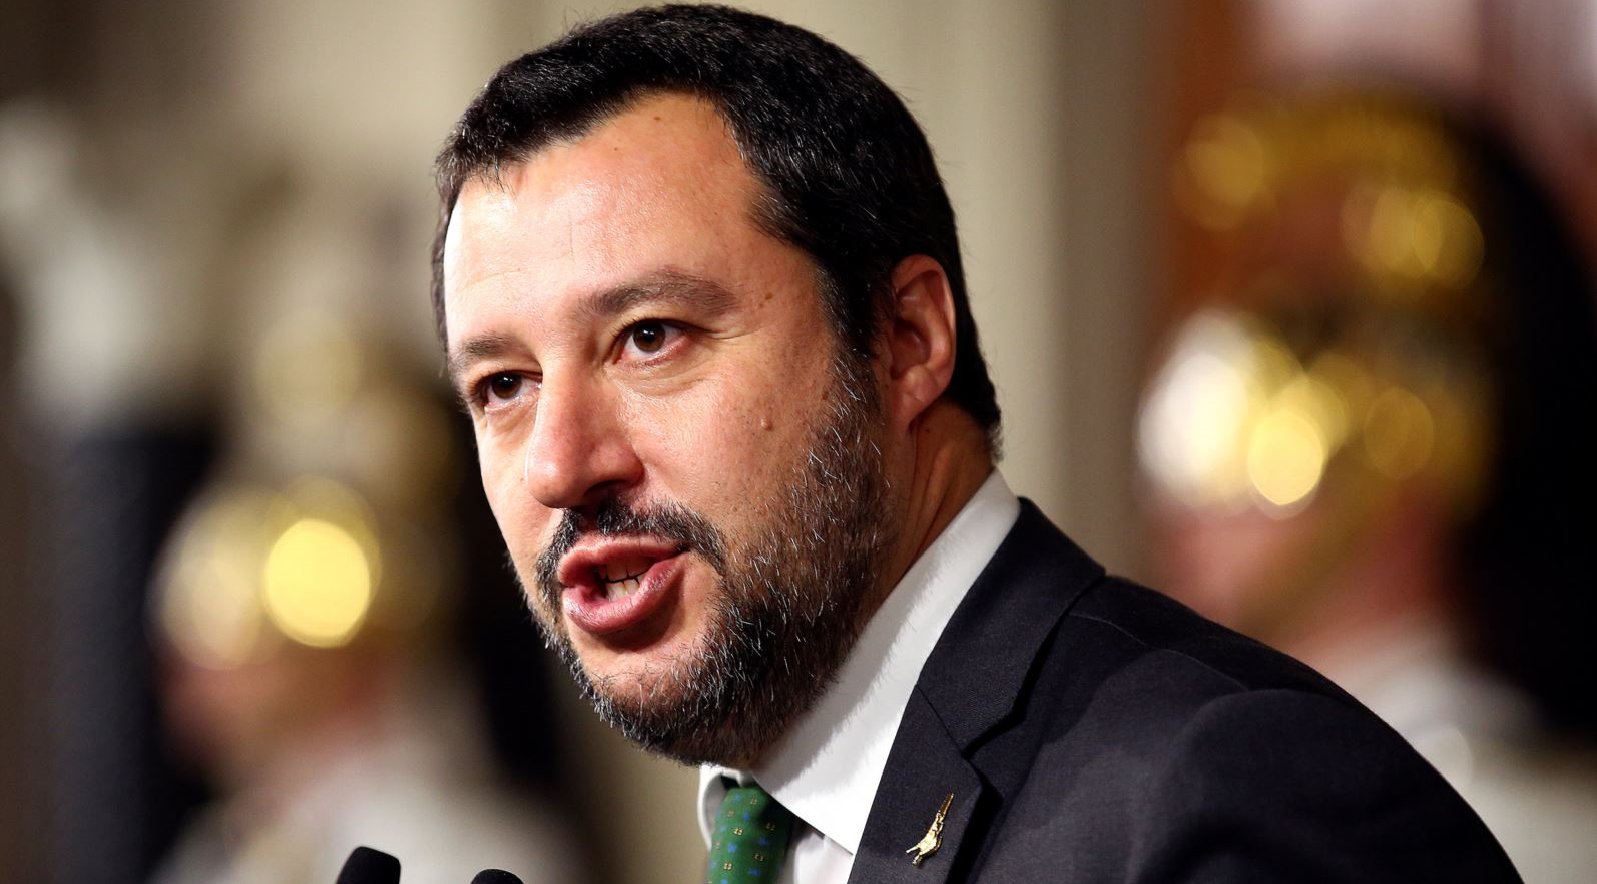 Matteo Salvini nyilvánosságra hozta Orbán Viktor sms-üzenetét